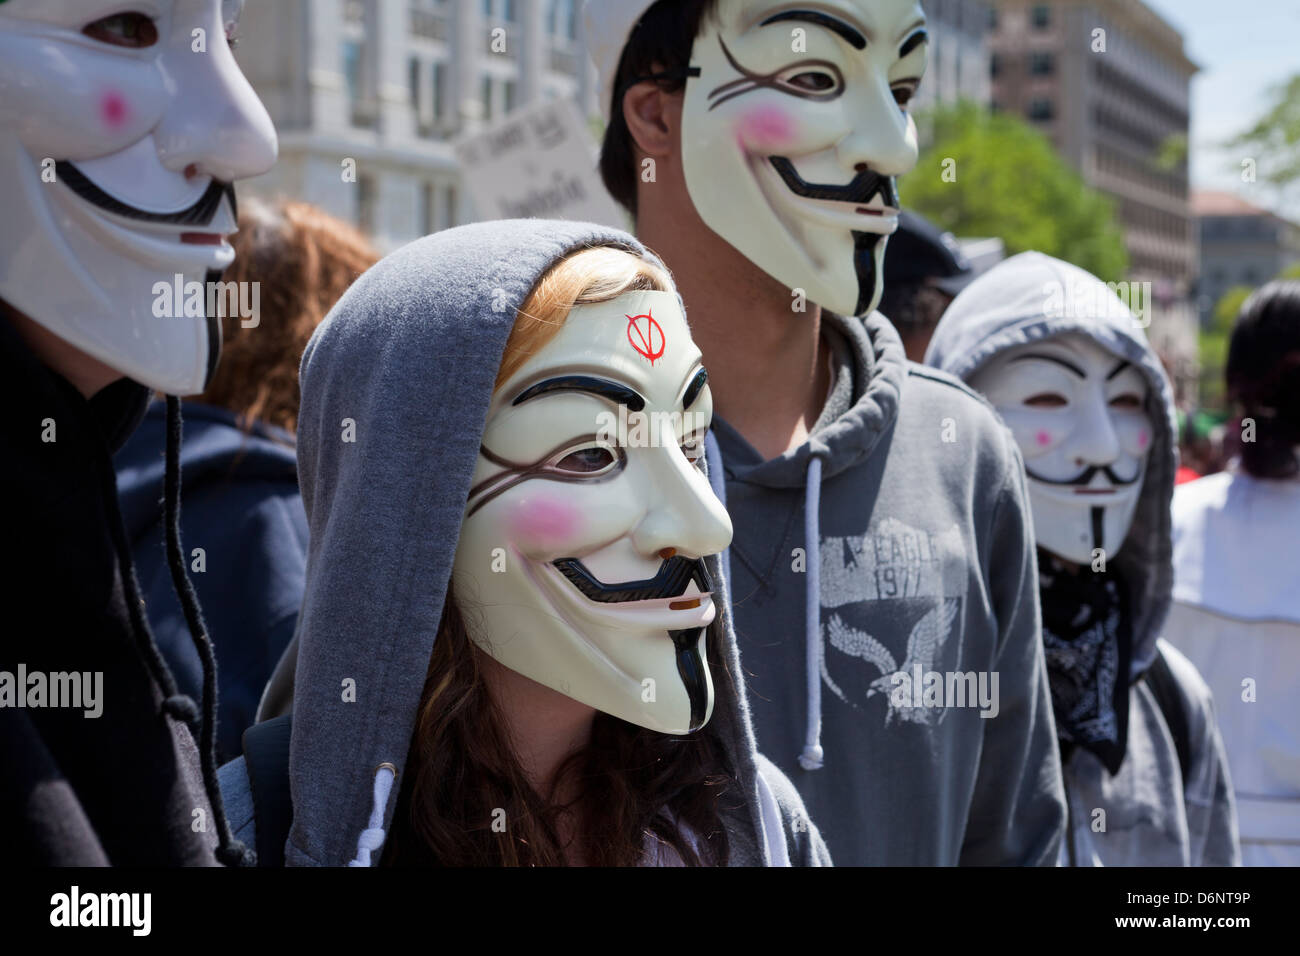 Un groupe de personnes portant des masques de Guy Fawkes lors d'un rassemblement Banque D'Images